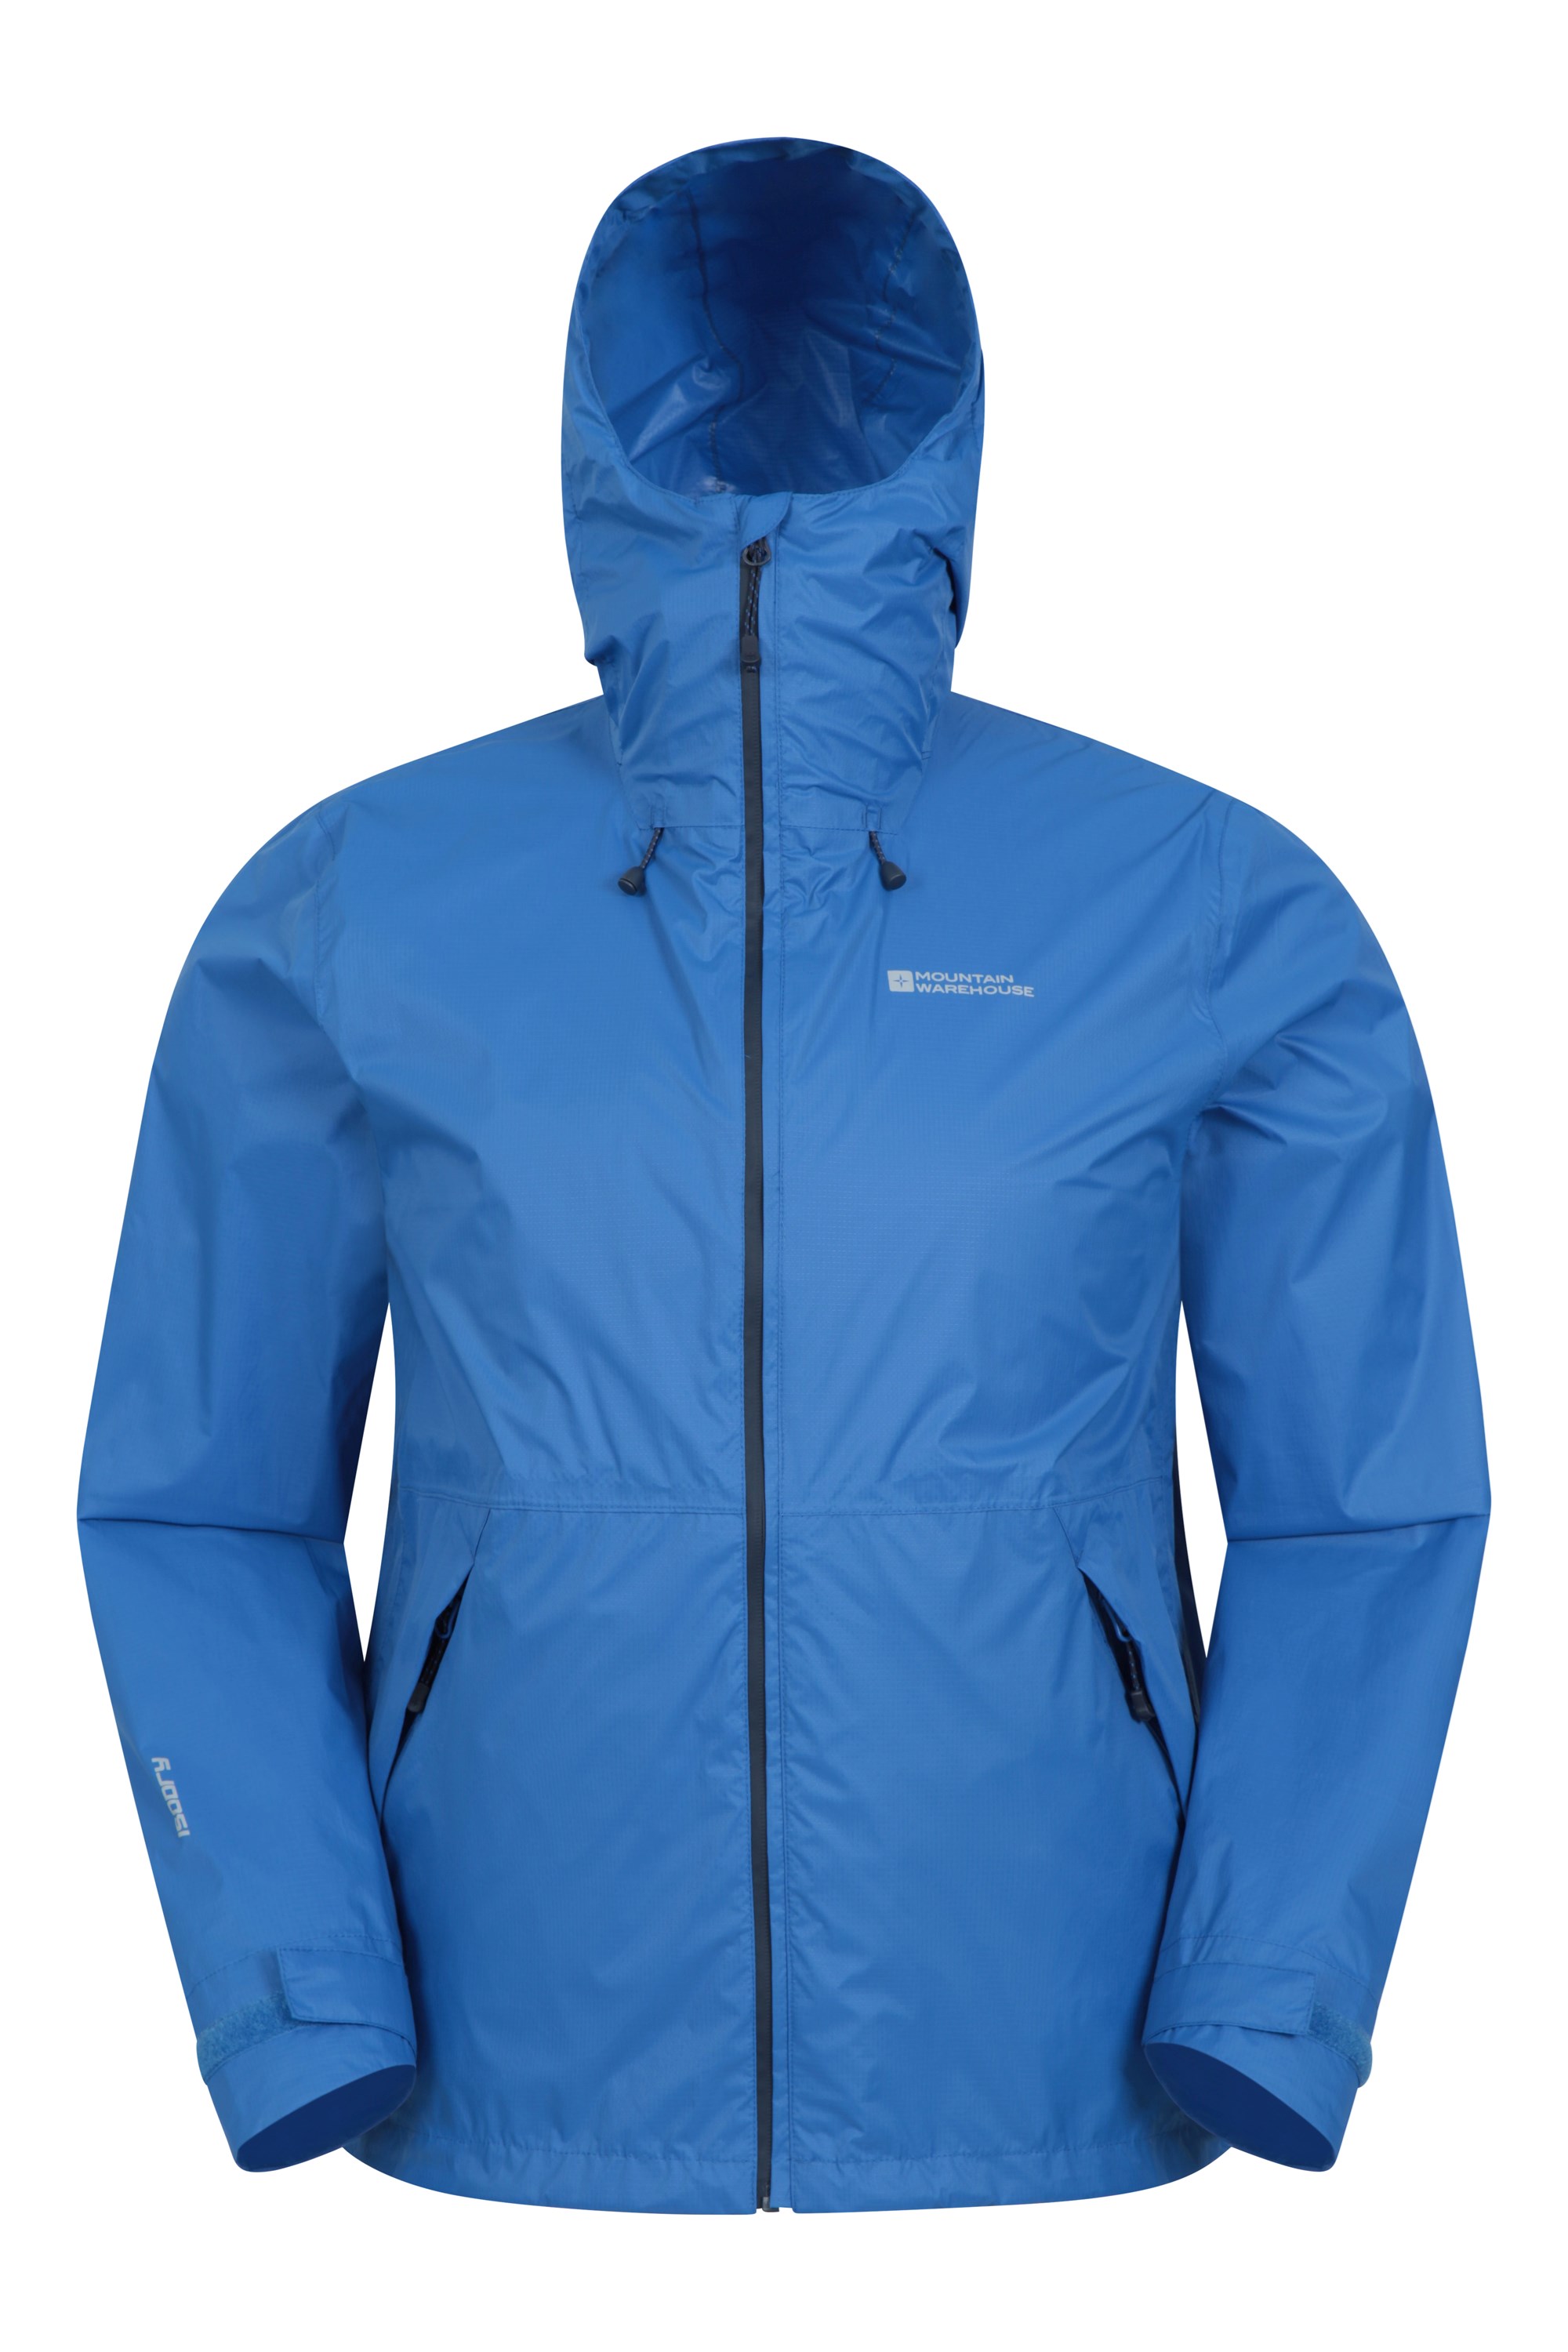 Swerve Mens Packaway Waterproof Jacket - Blue